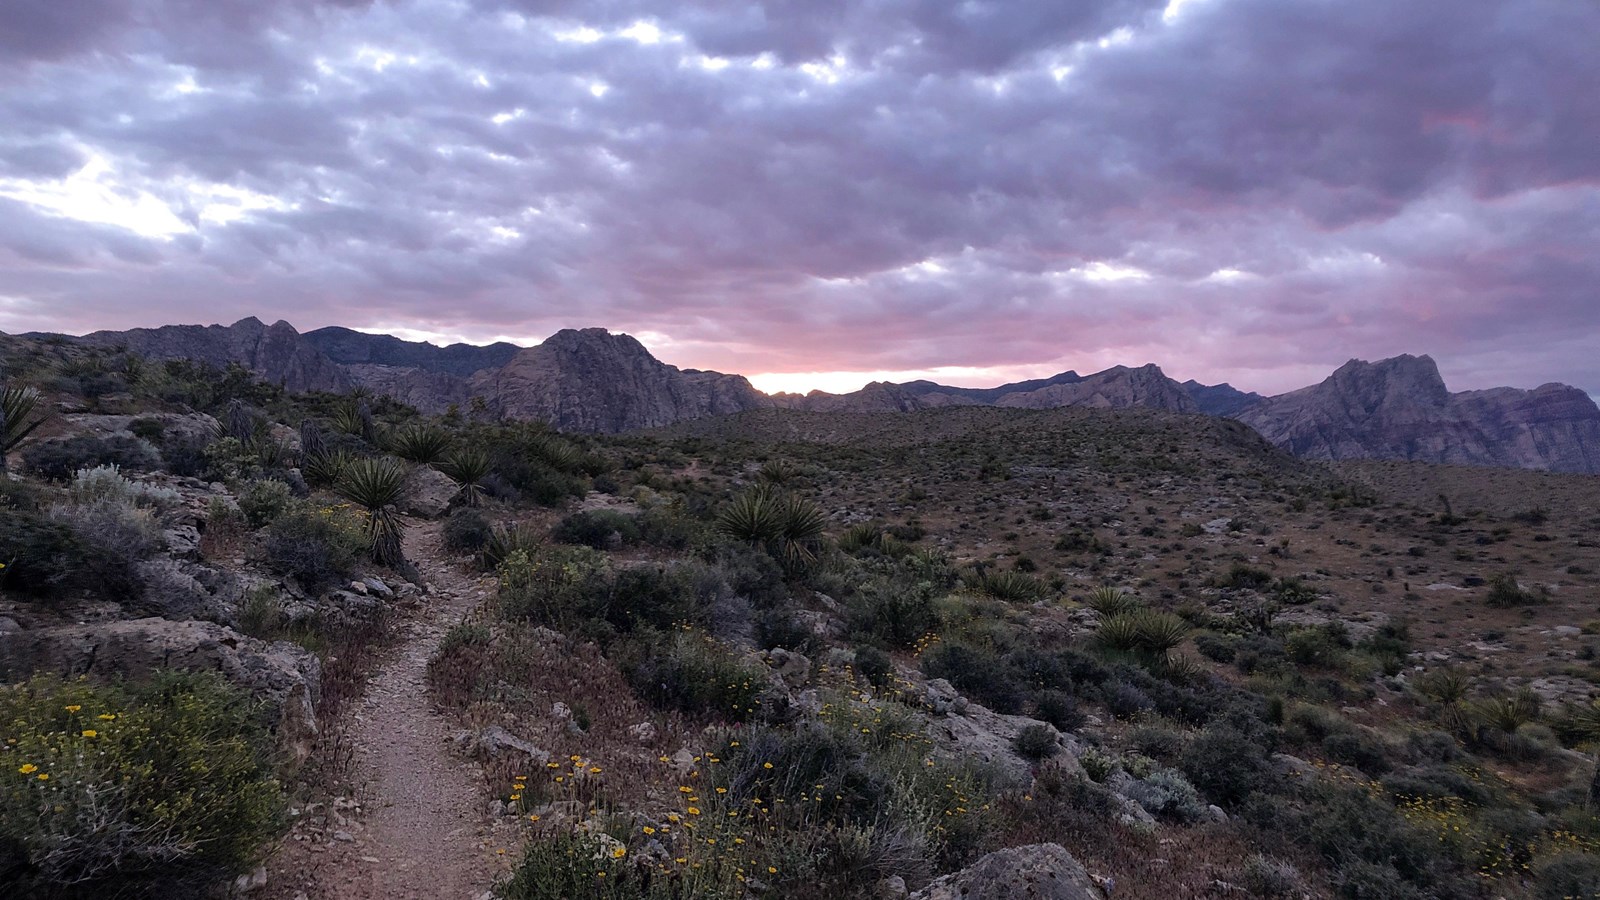 A trail leads through a desert under a cloudy, sunset-lit sky.